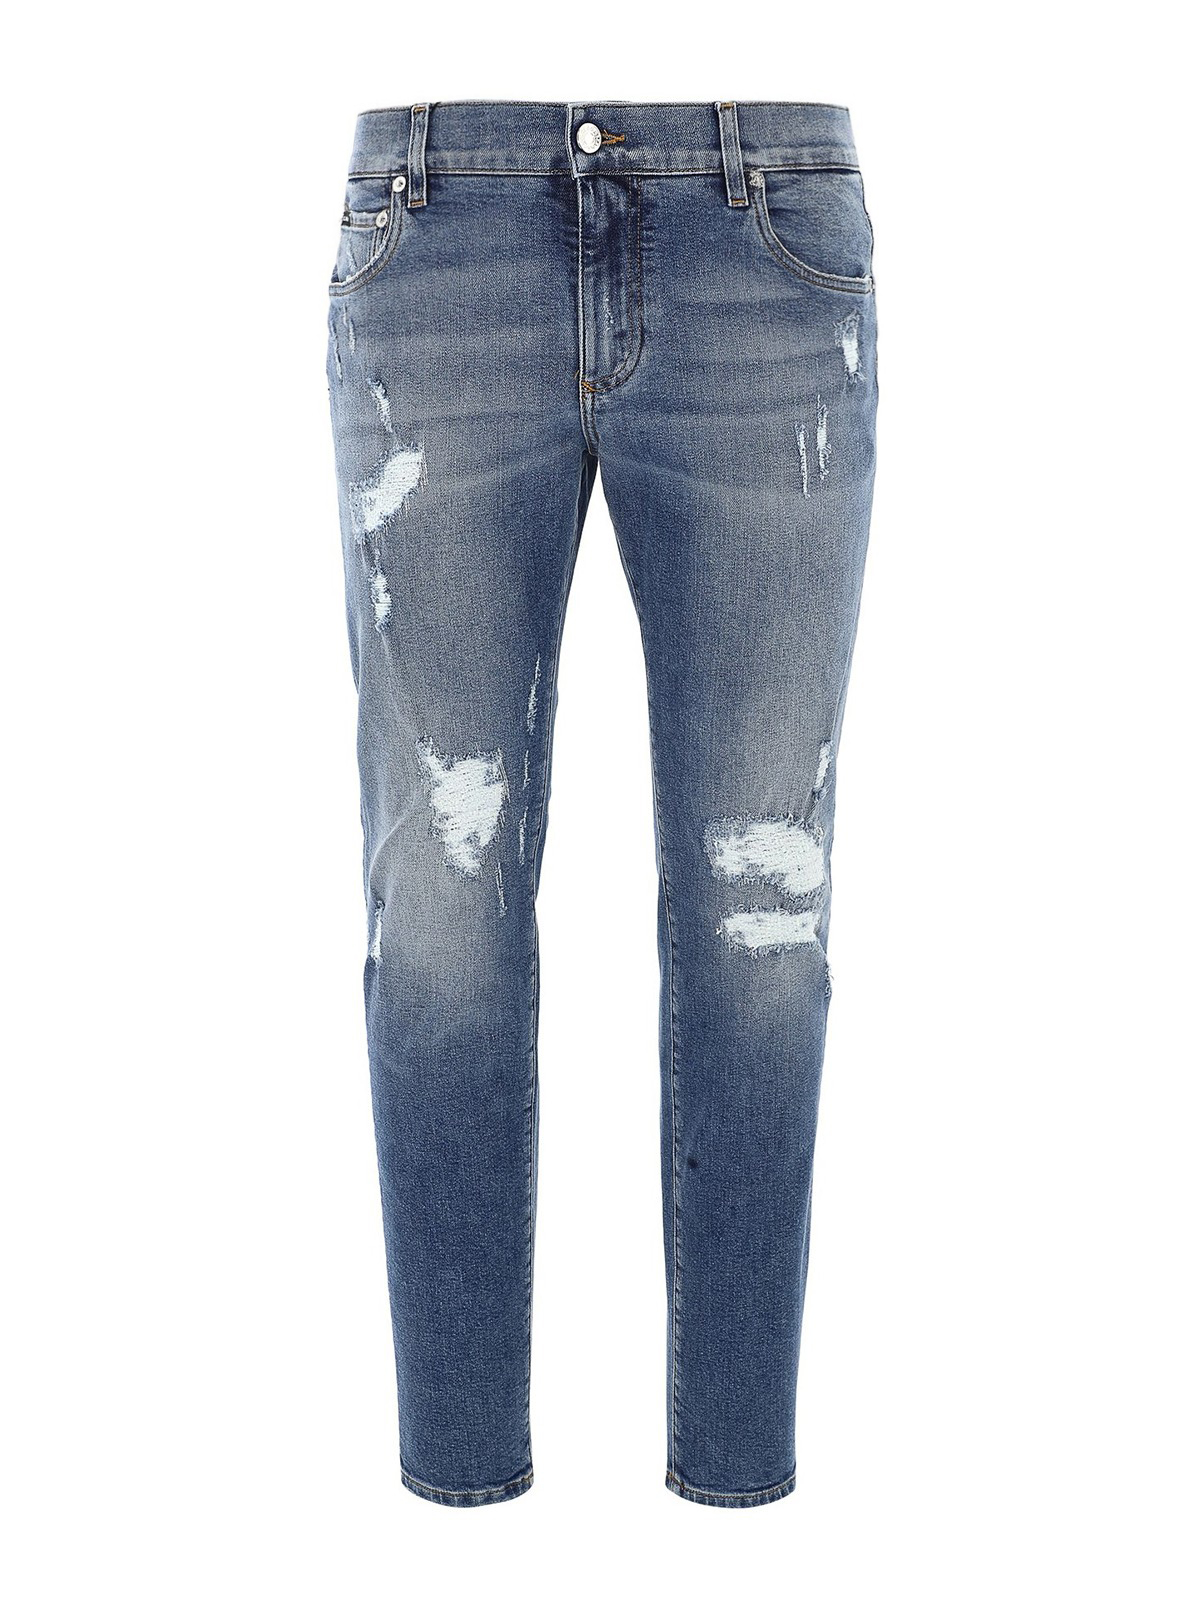 Skinny jeans Dolce & Gabbana - Destroyed detailed denim jeans ...